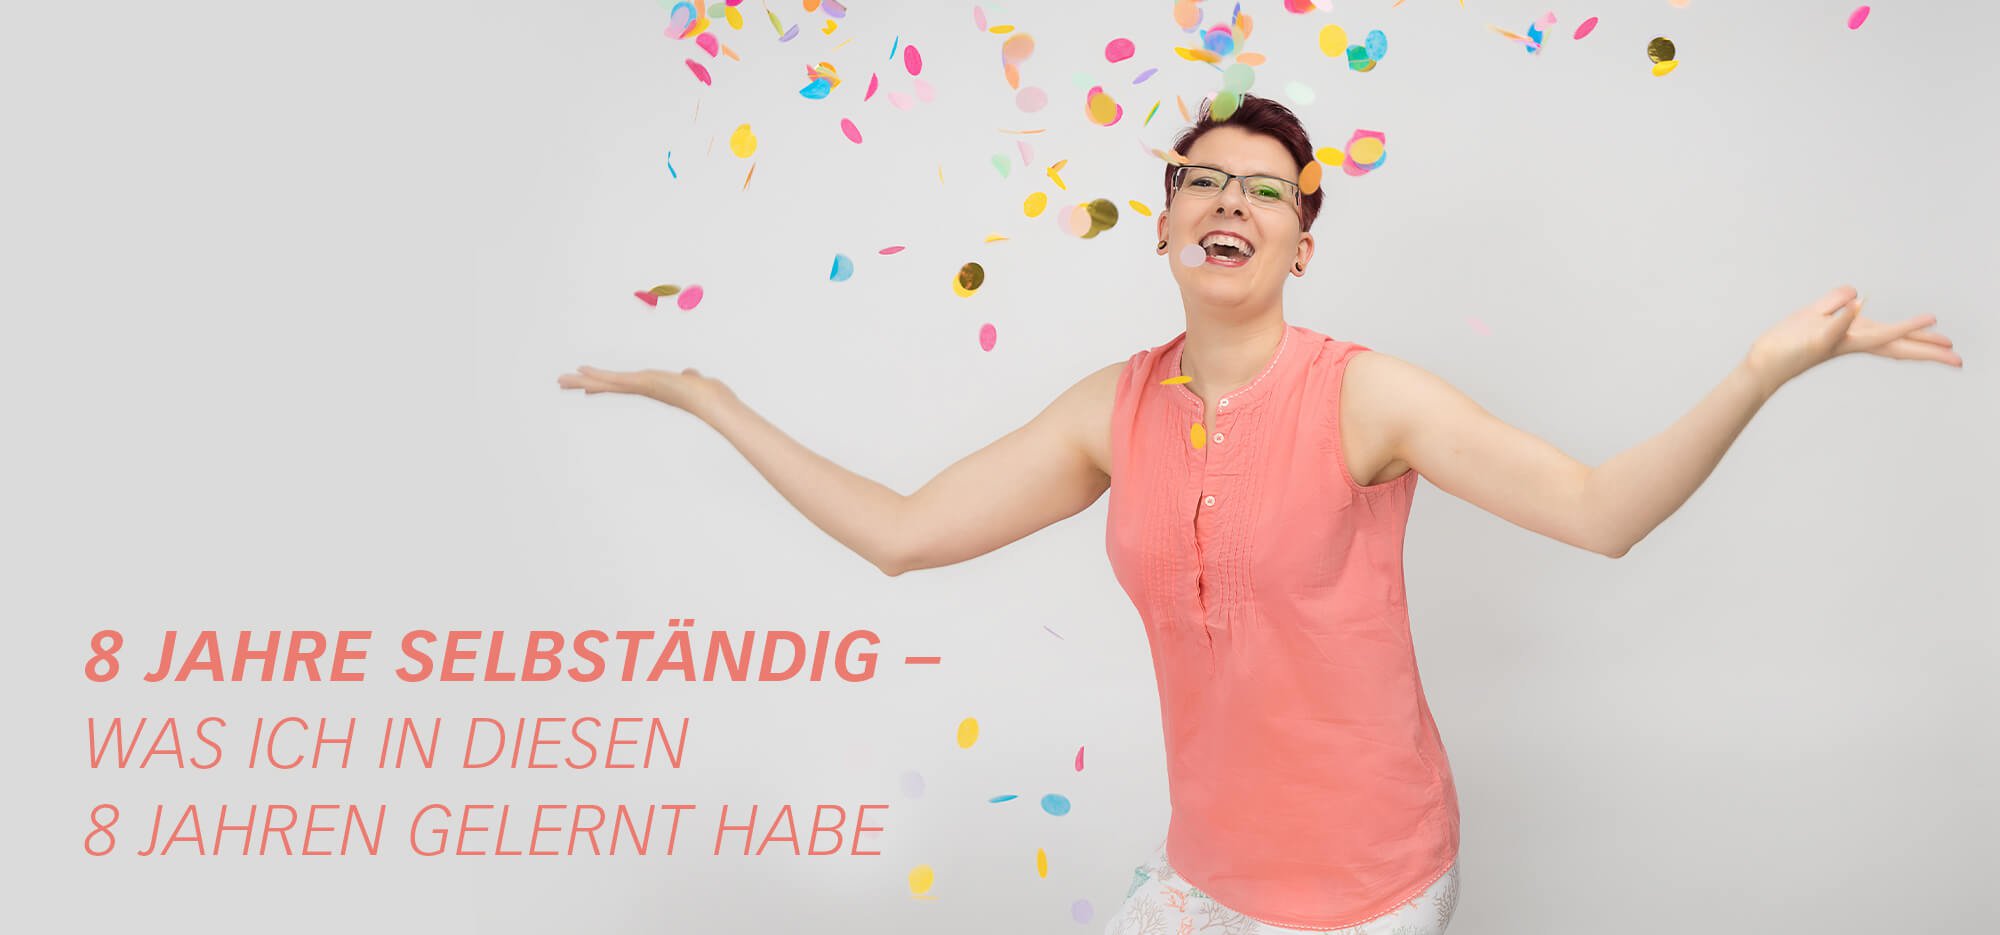 FarbFaible Inhaberin Miriam Hohmann feiert 8-jähriges Firmenjubiläum mit 8 Tipps